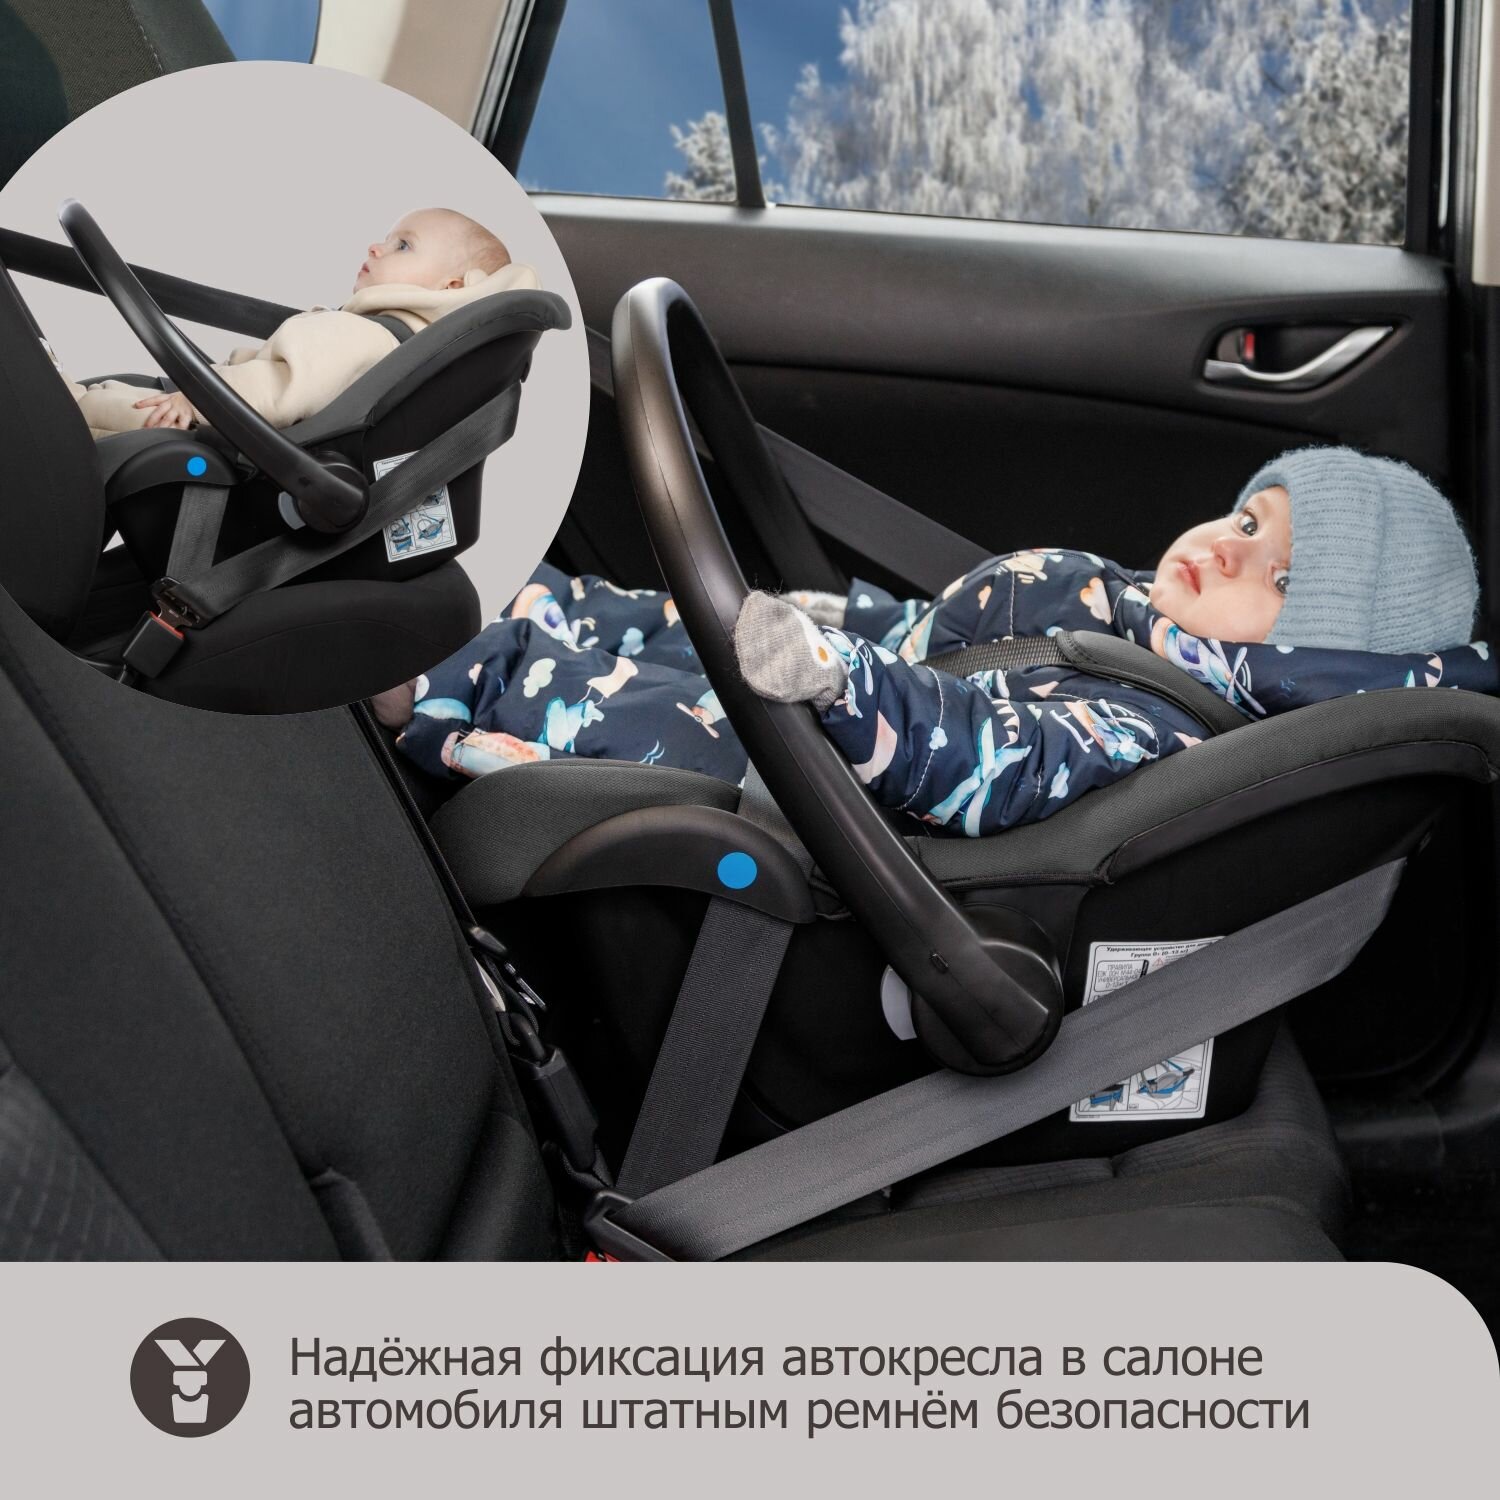 Автокресло детское, автолюлька для новорожденных Cleo LUX от 0 до 13 кг, grey